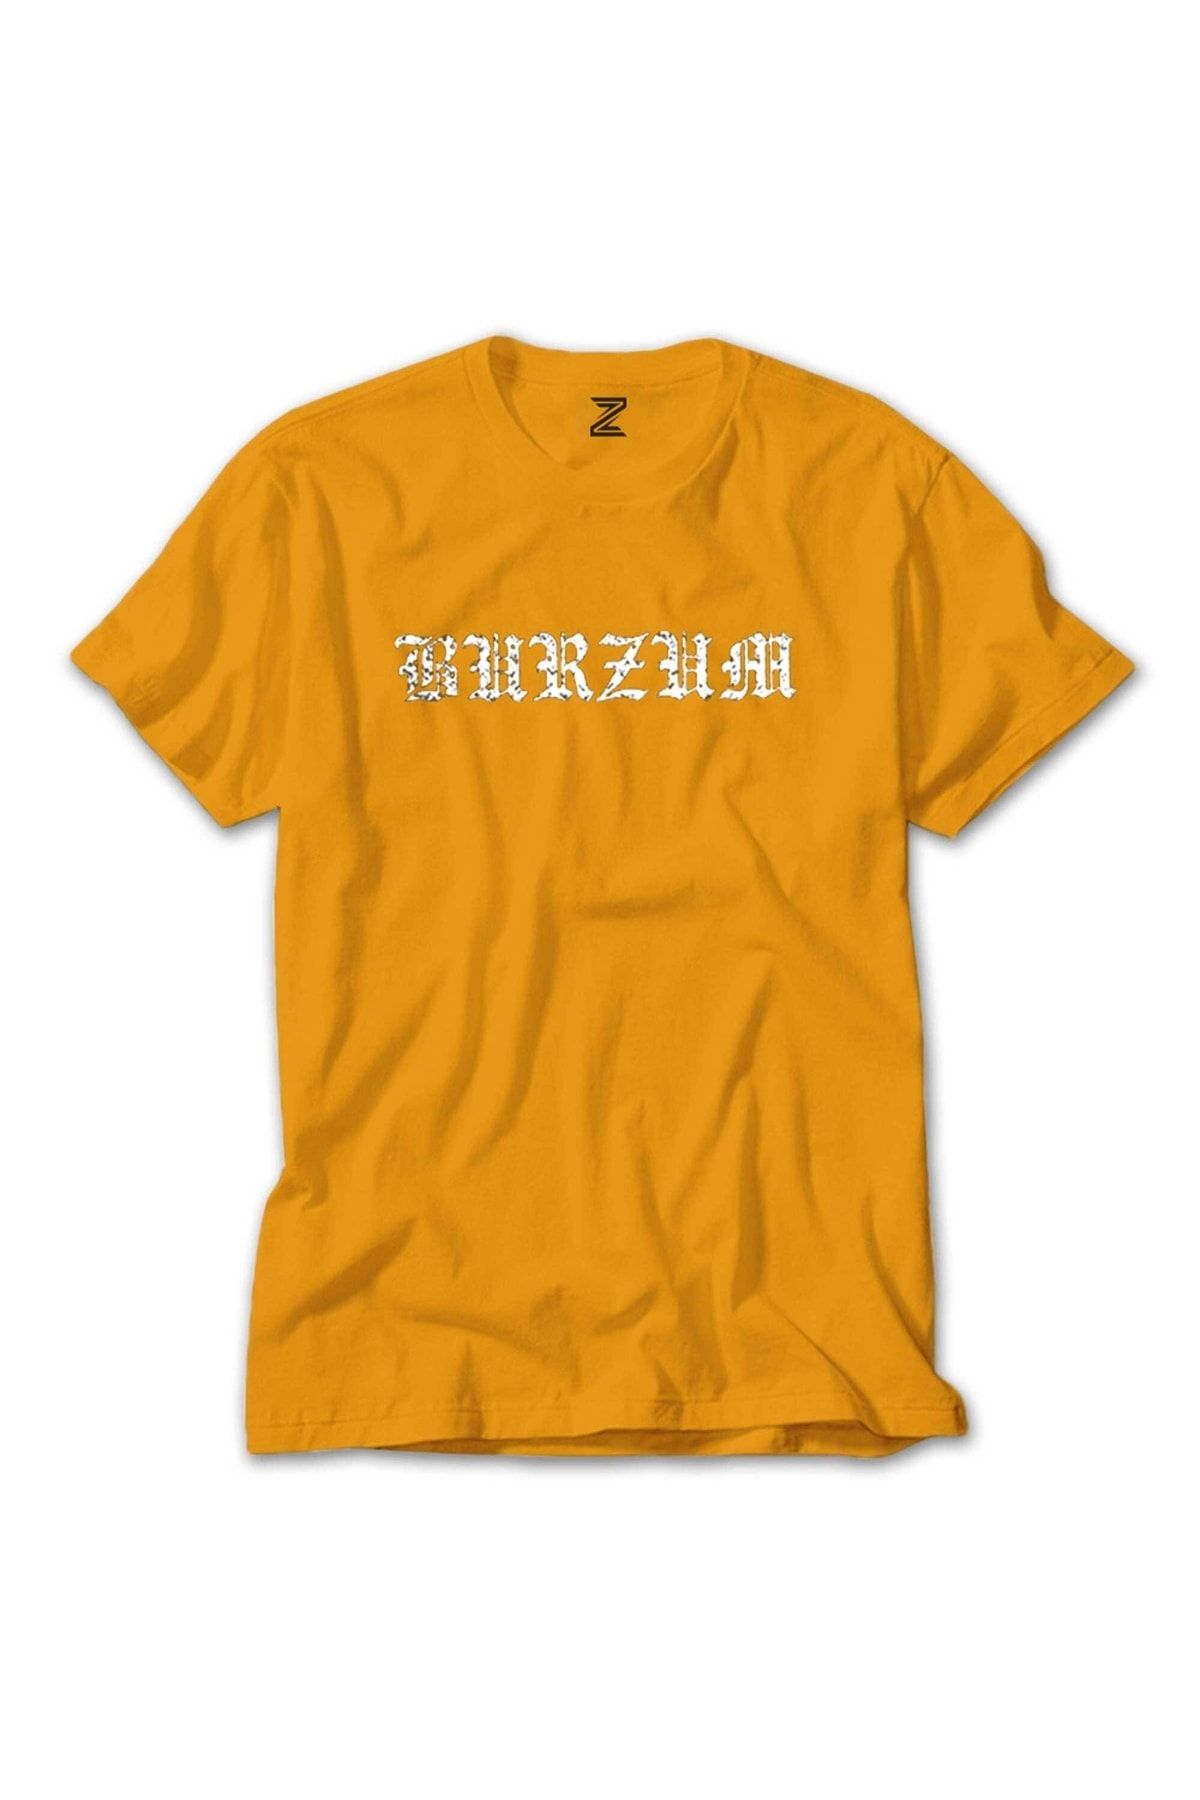 Z zepplin Burzum Logo Yazı White Sarı Tişört